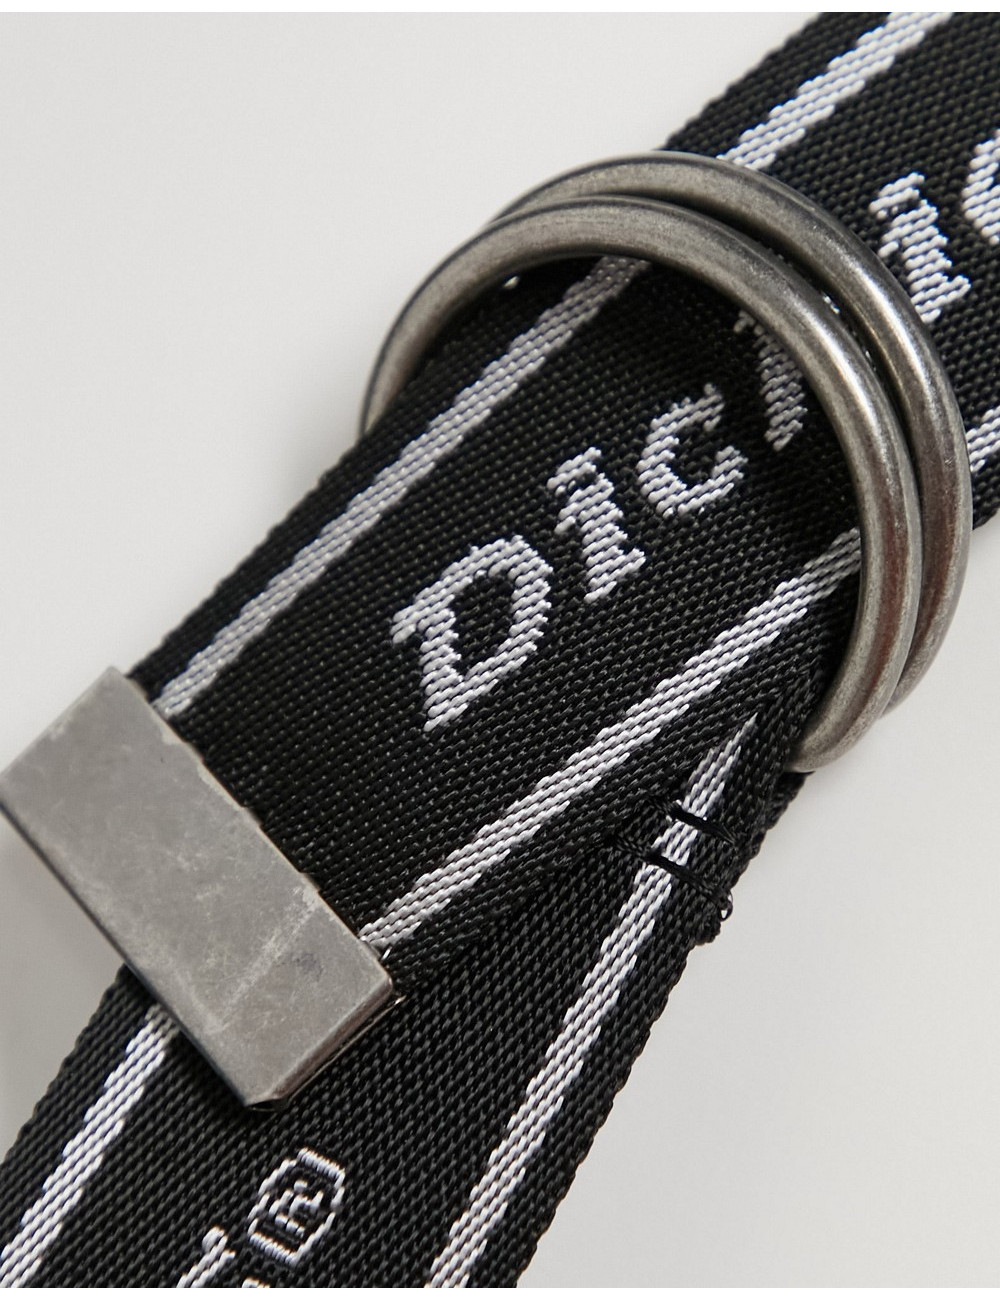 Dickies Amboy belt in black